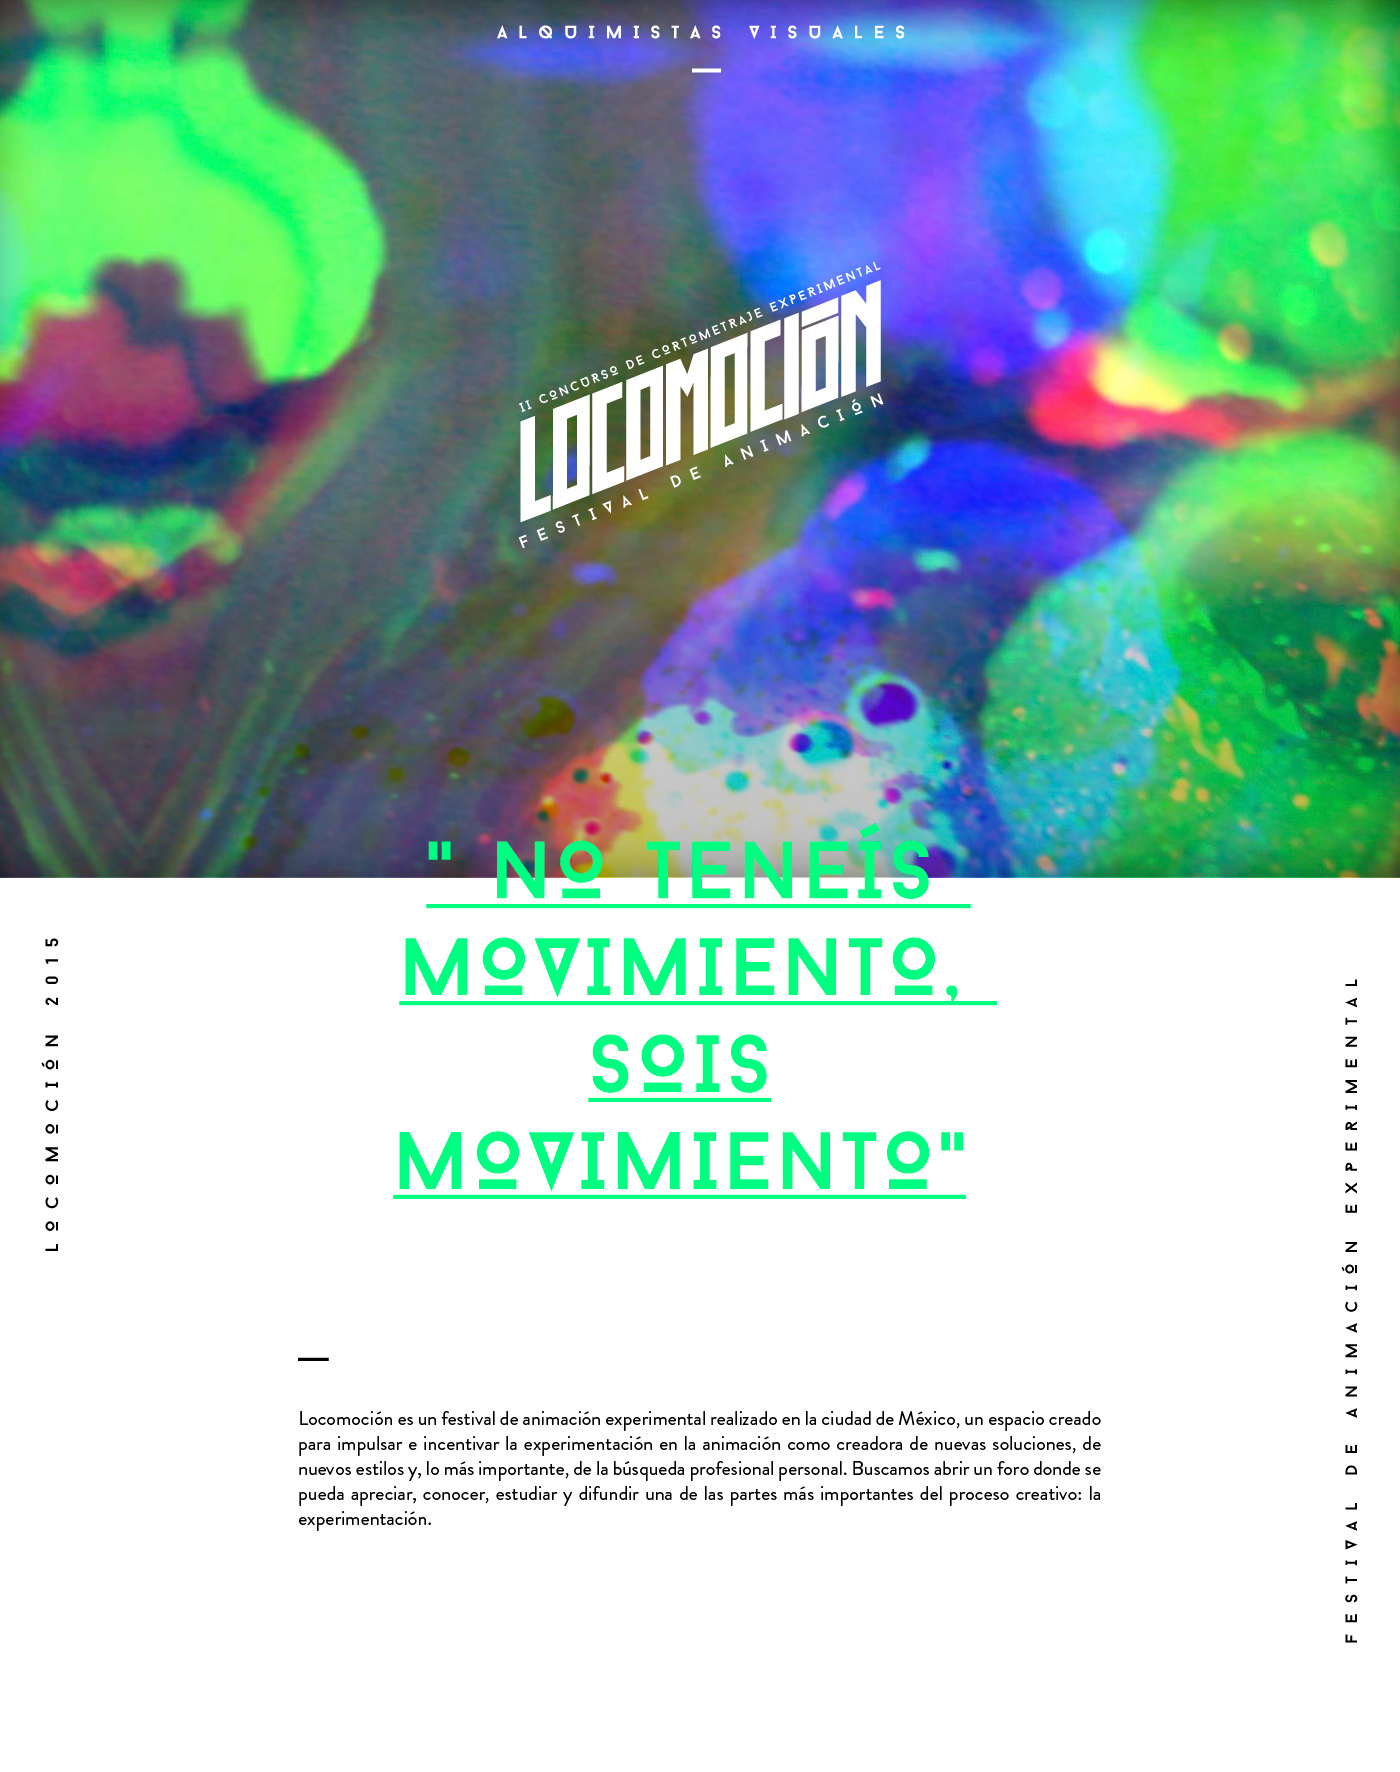 locomoción festival animacion mexico experimental gifs animtation branding  video locomocionfest logo ditialart digital Idenitdad green